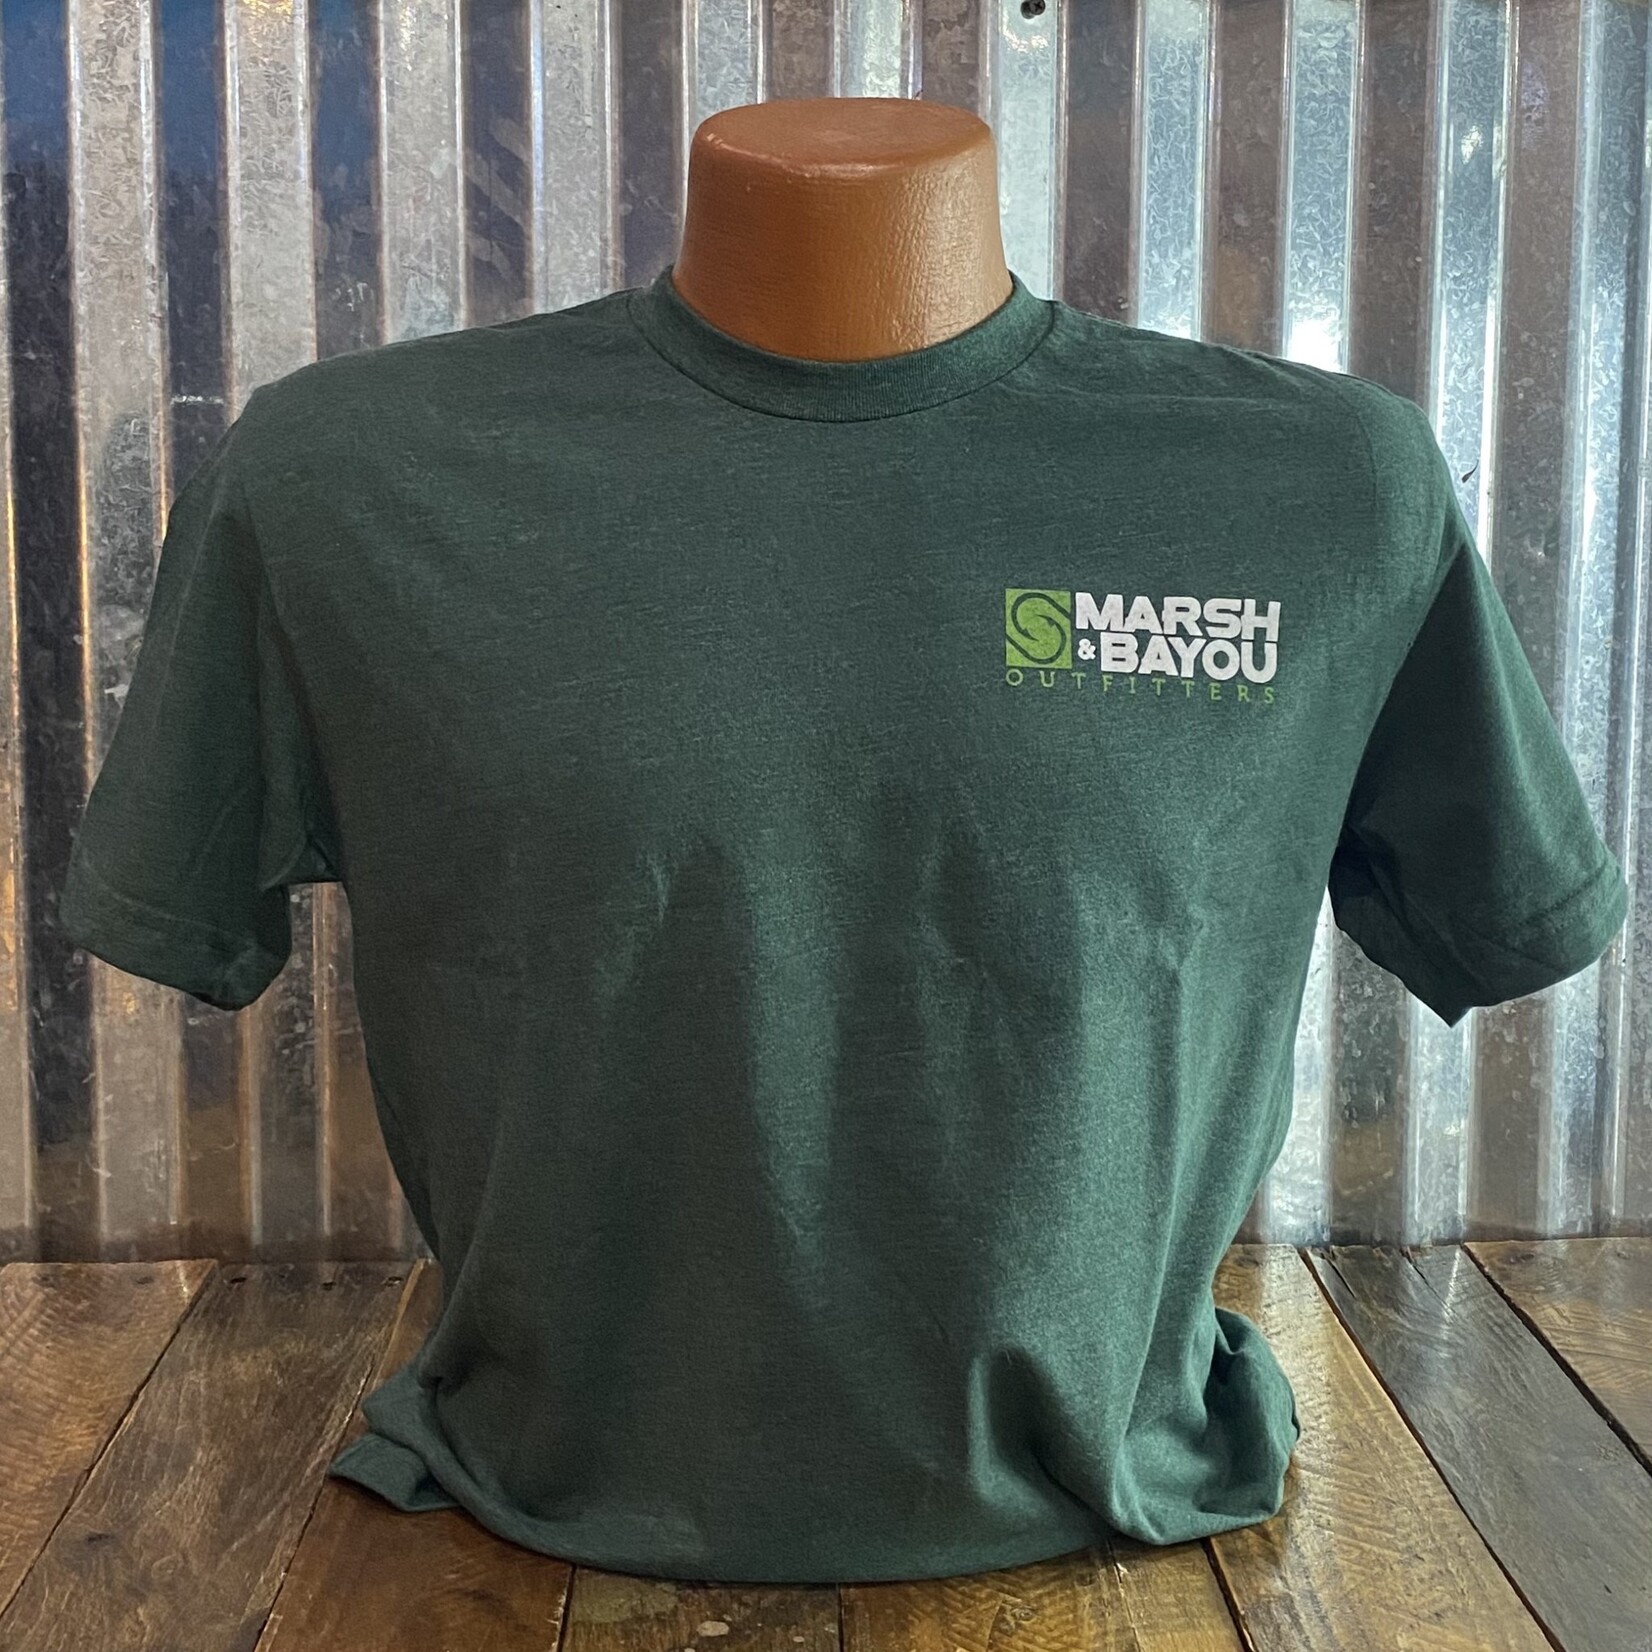 Marsh & Bayou Outfitters | Custom Tees "Believe"